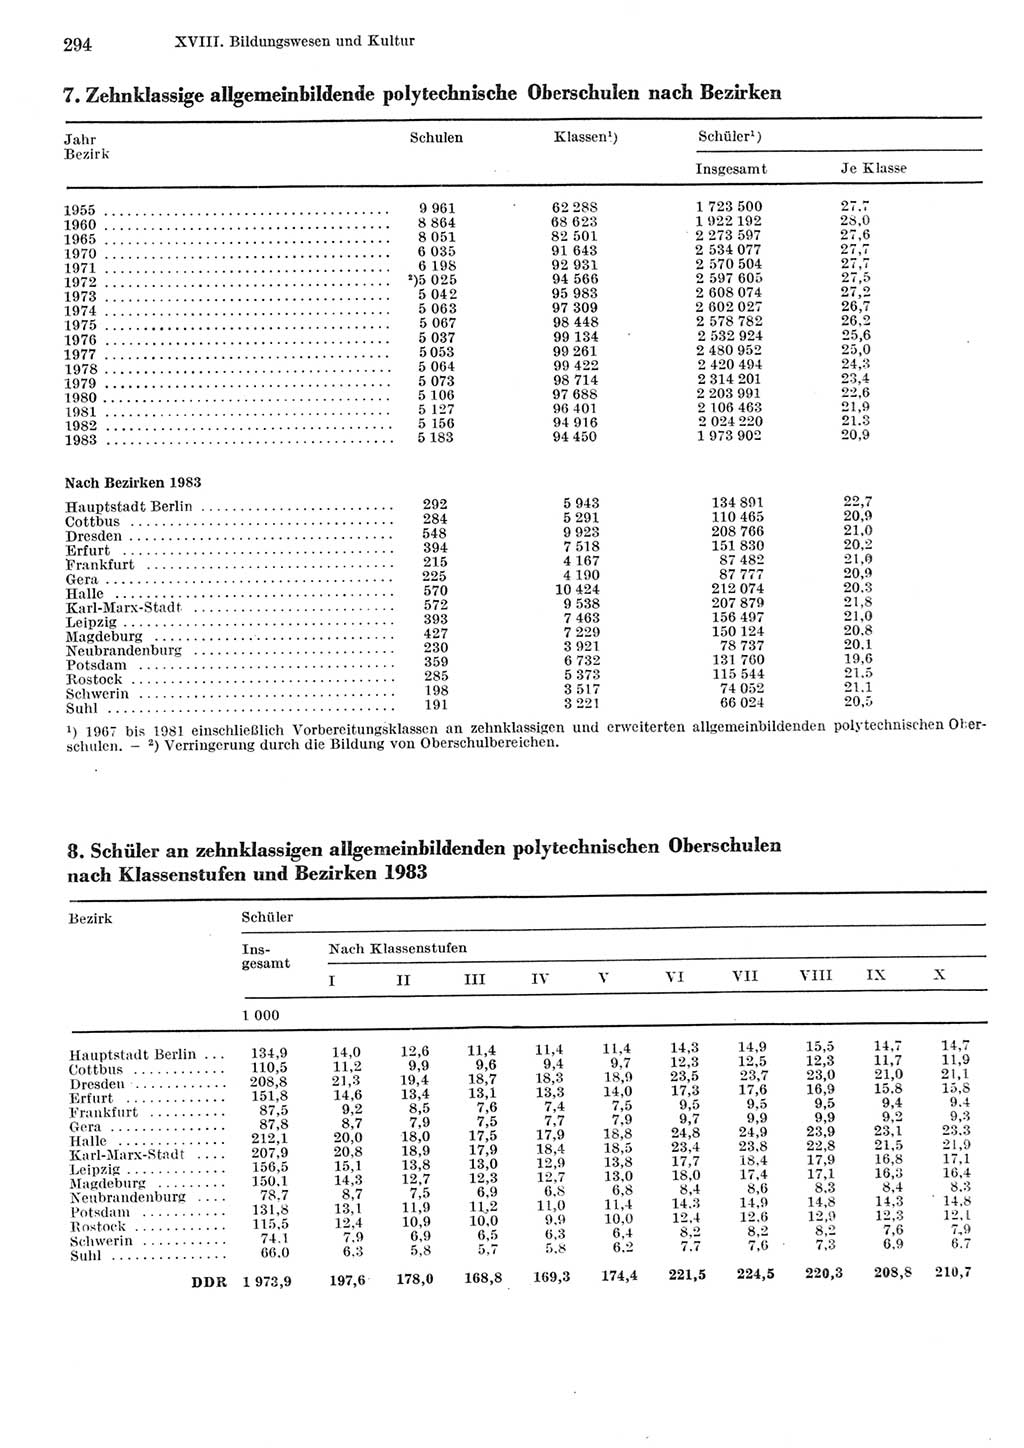 Statistisches Jahrbuch der Deutschen Demokratischen Republik (DDR) 1984, Seite 294 (Stat. Jb. DDR 1984, S. 294)